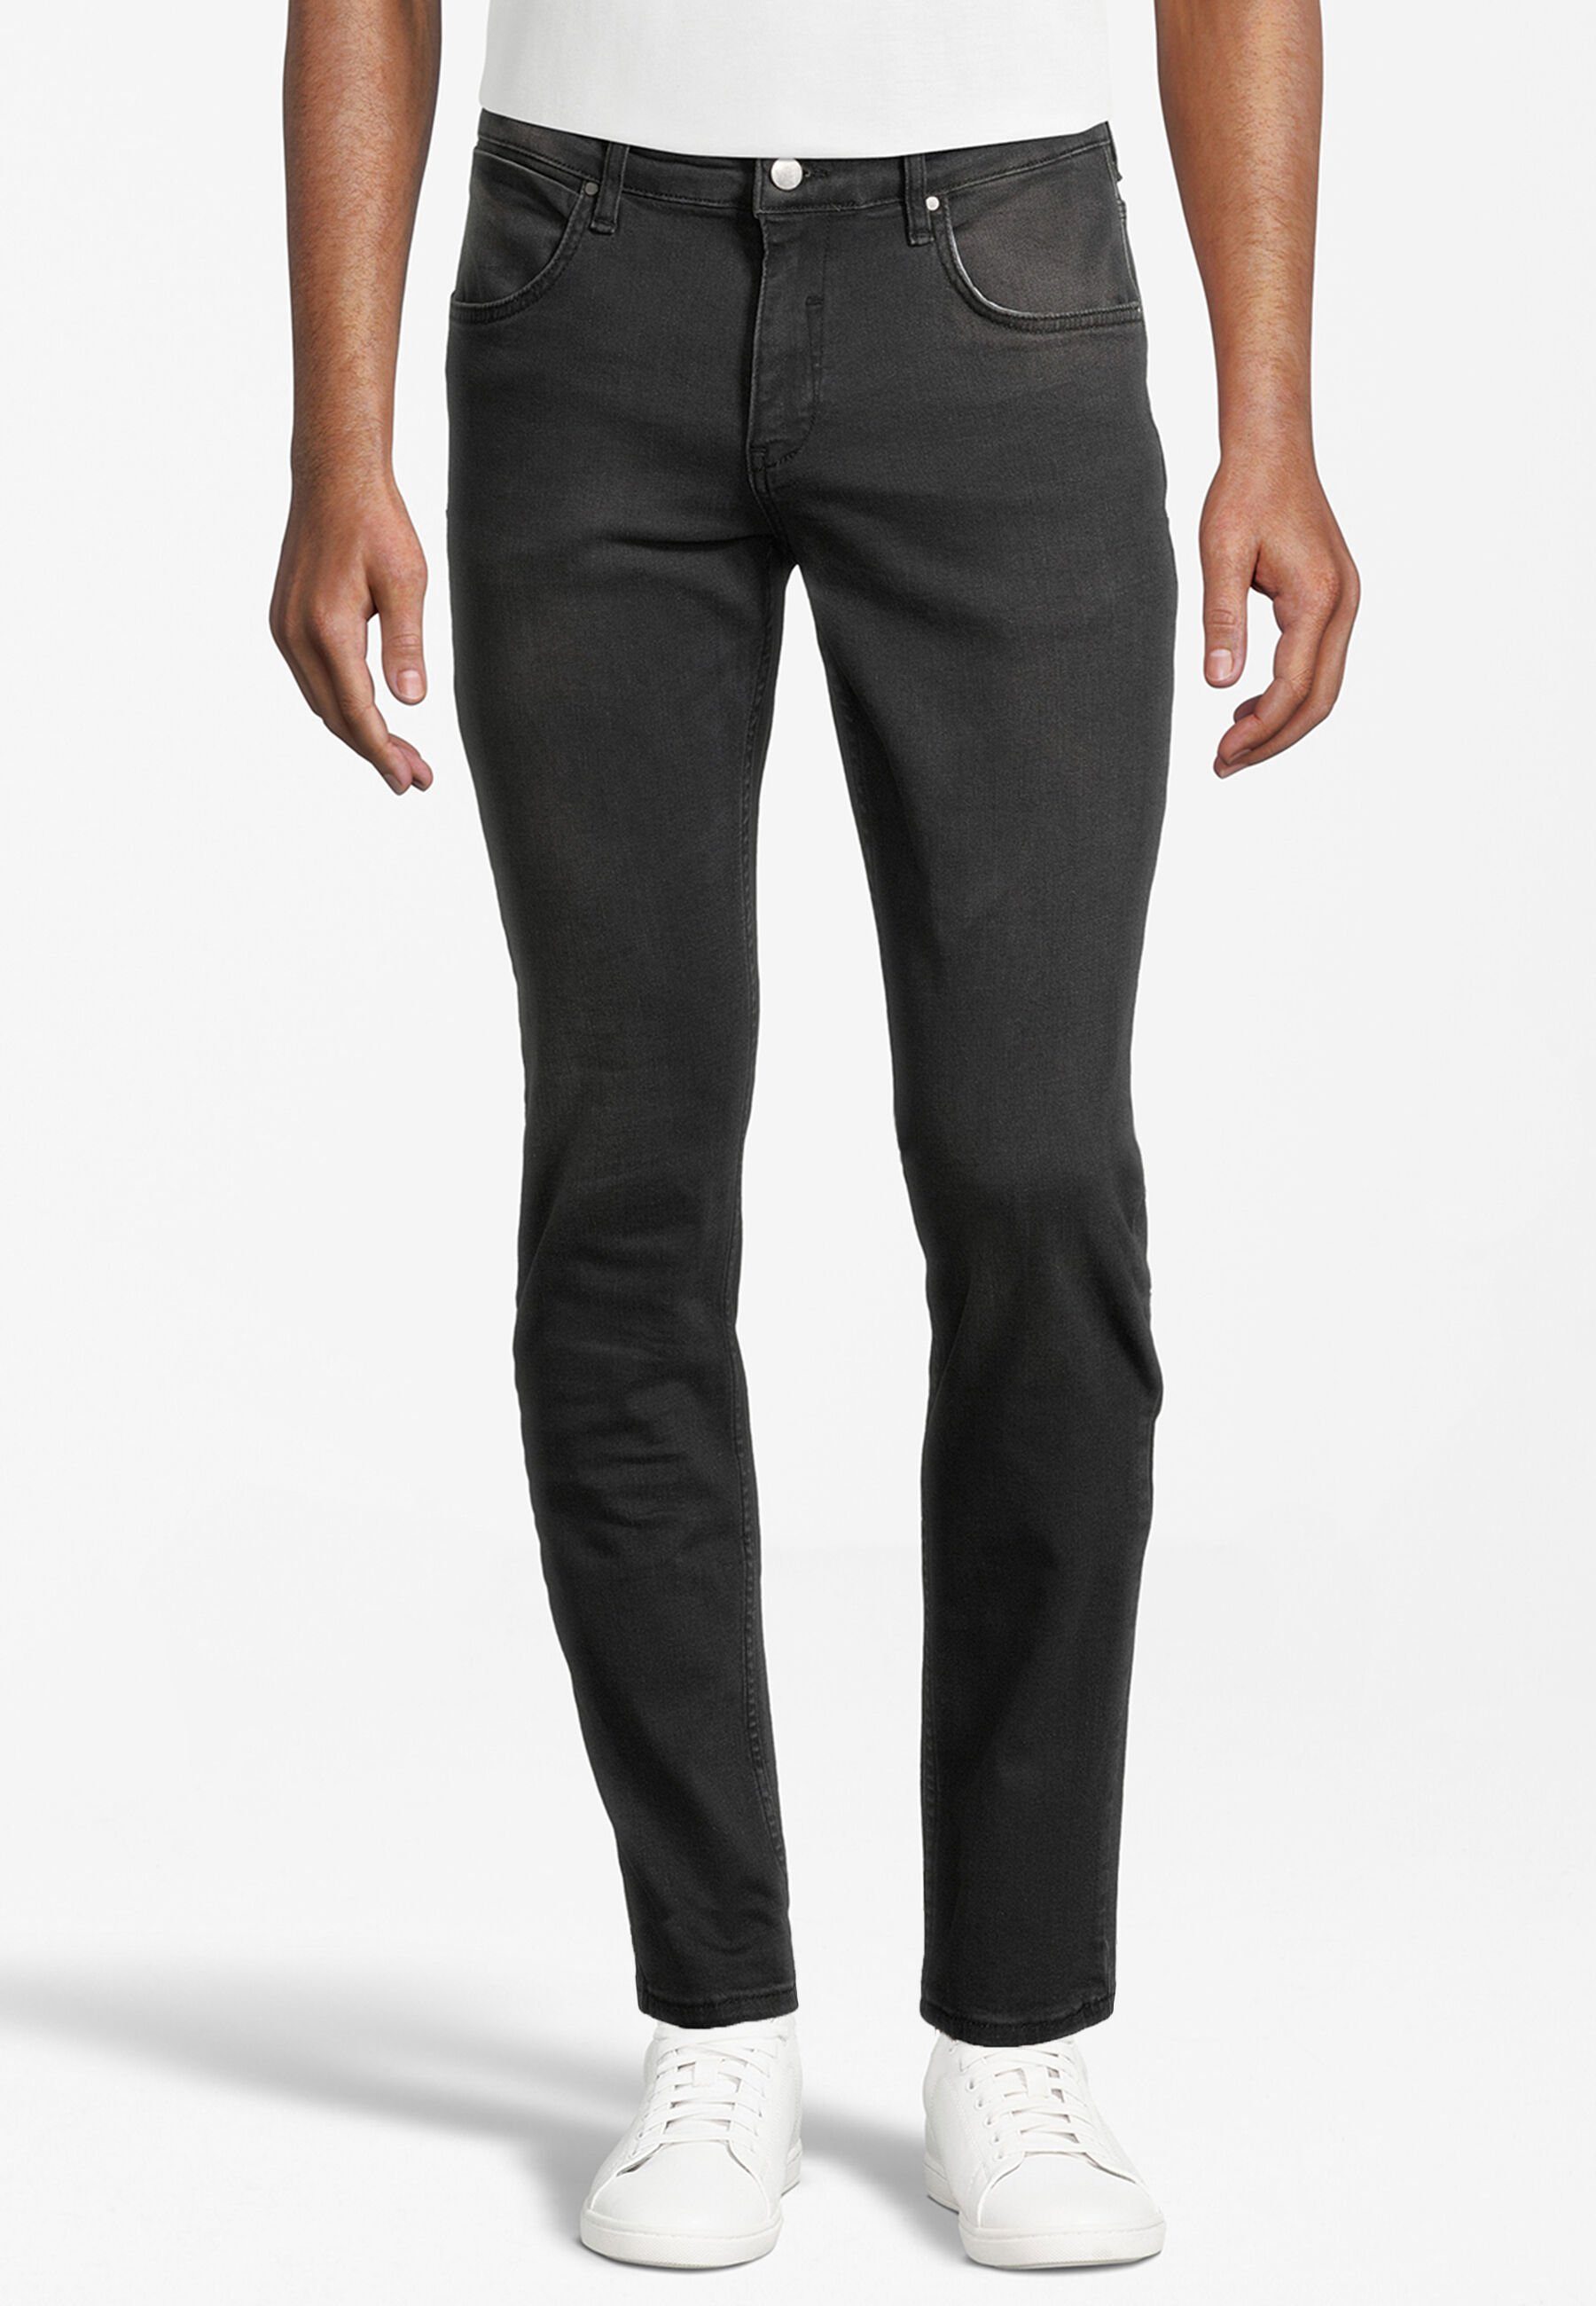 SteffenKlein Slim-fit-Jeans black denim